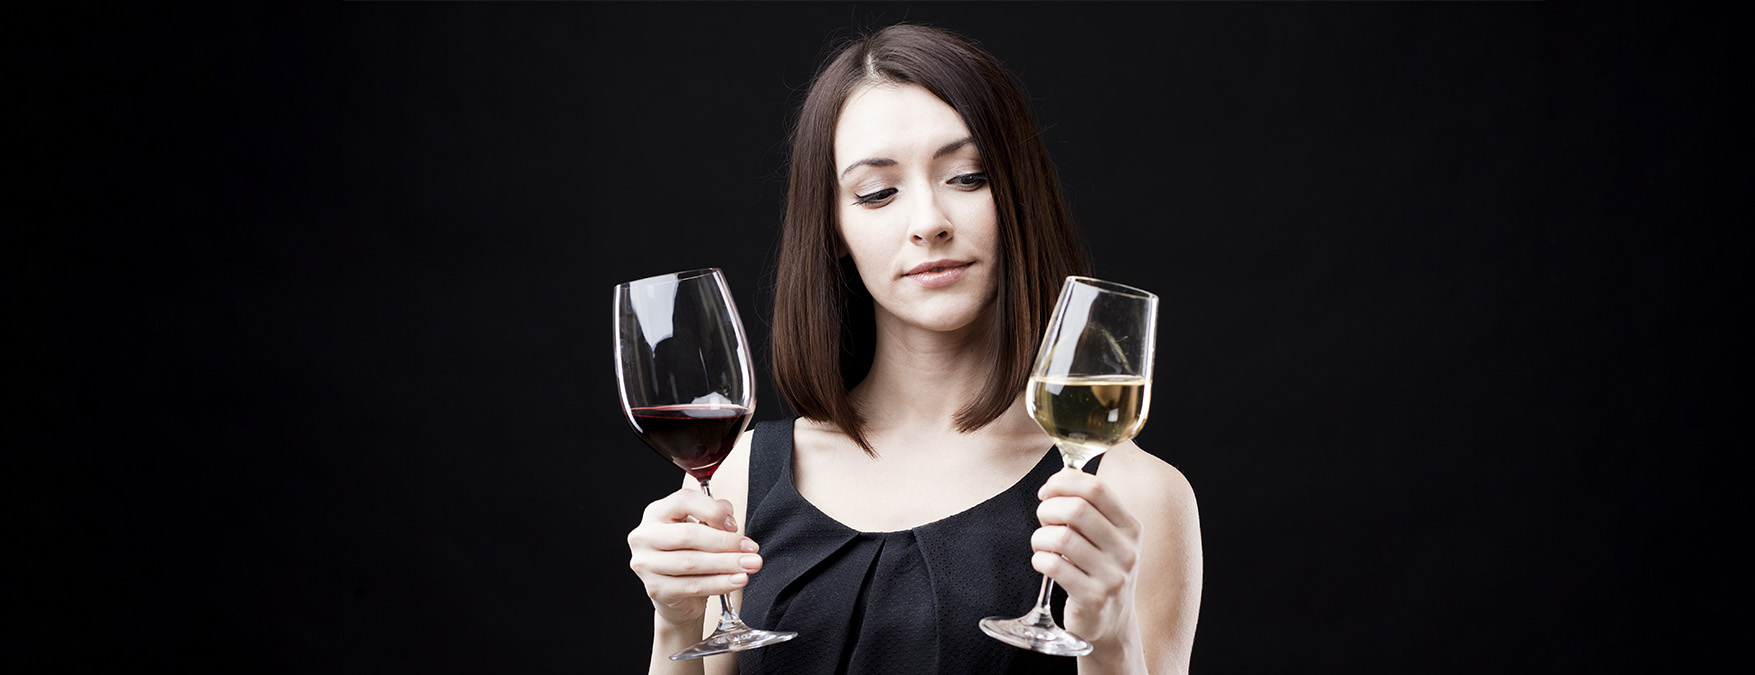 Syksyn parhaat viinit pihistä vs. panosta